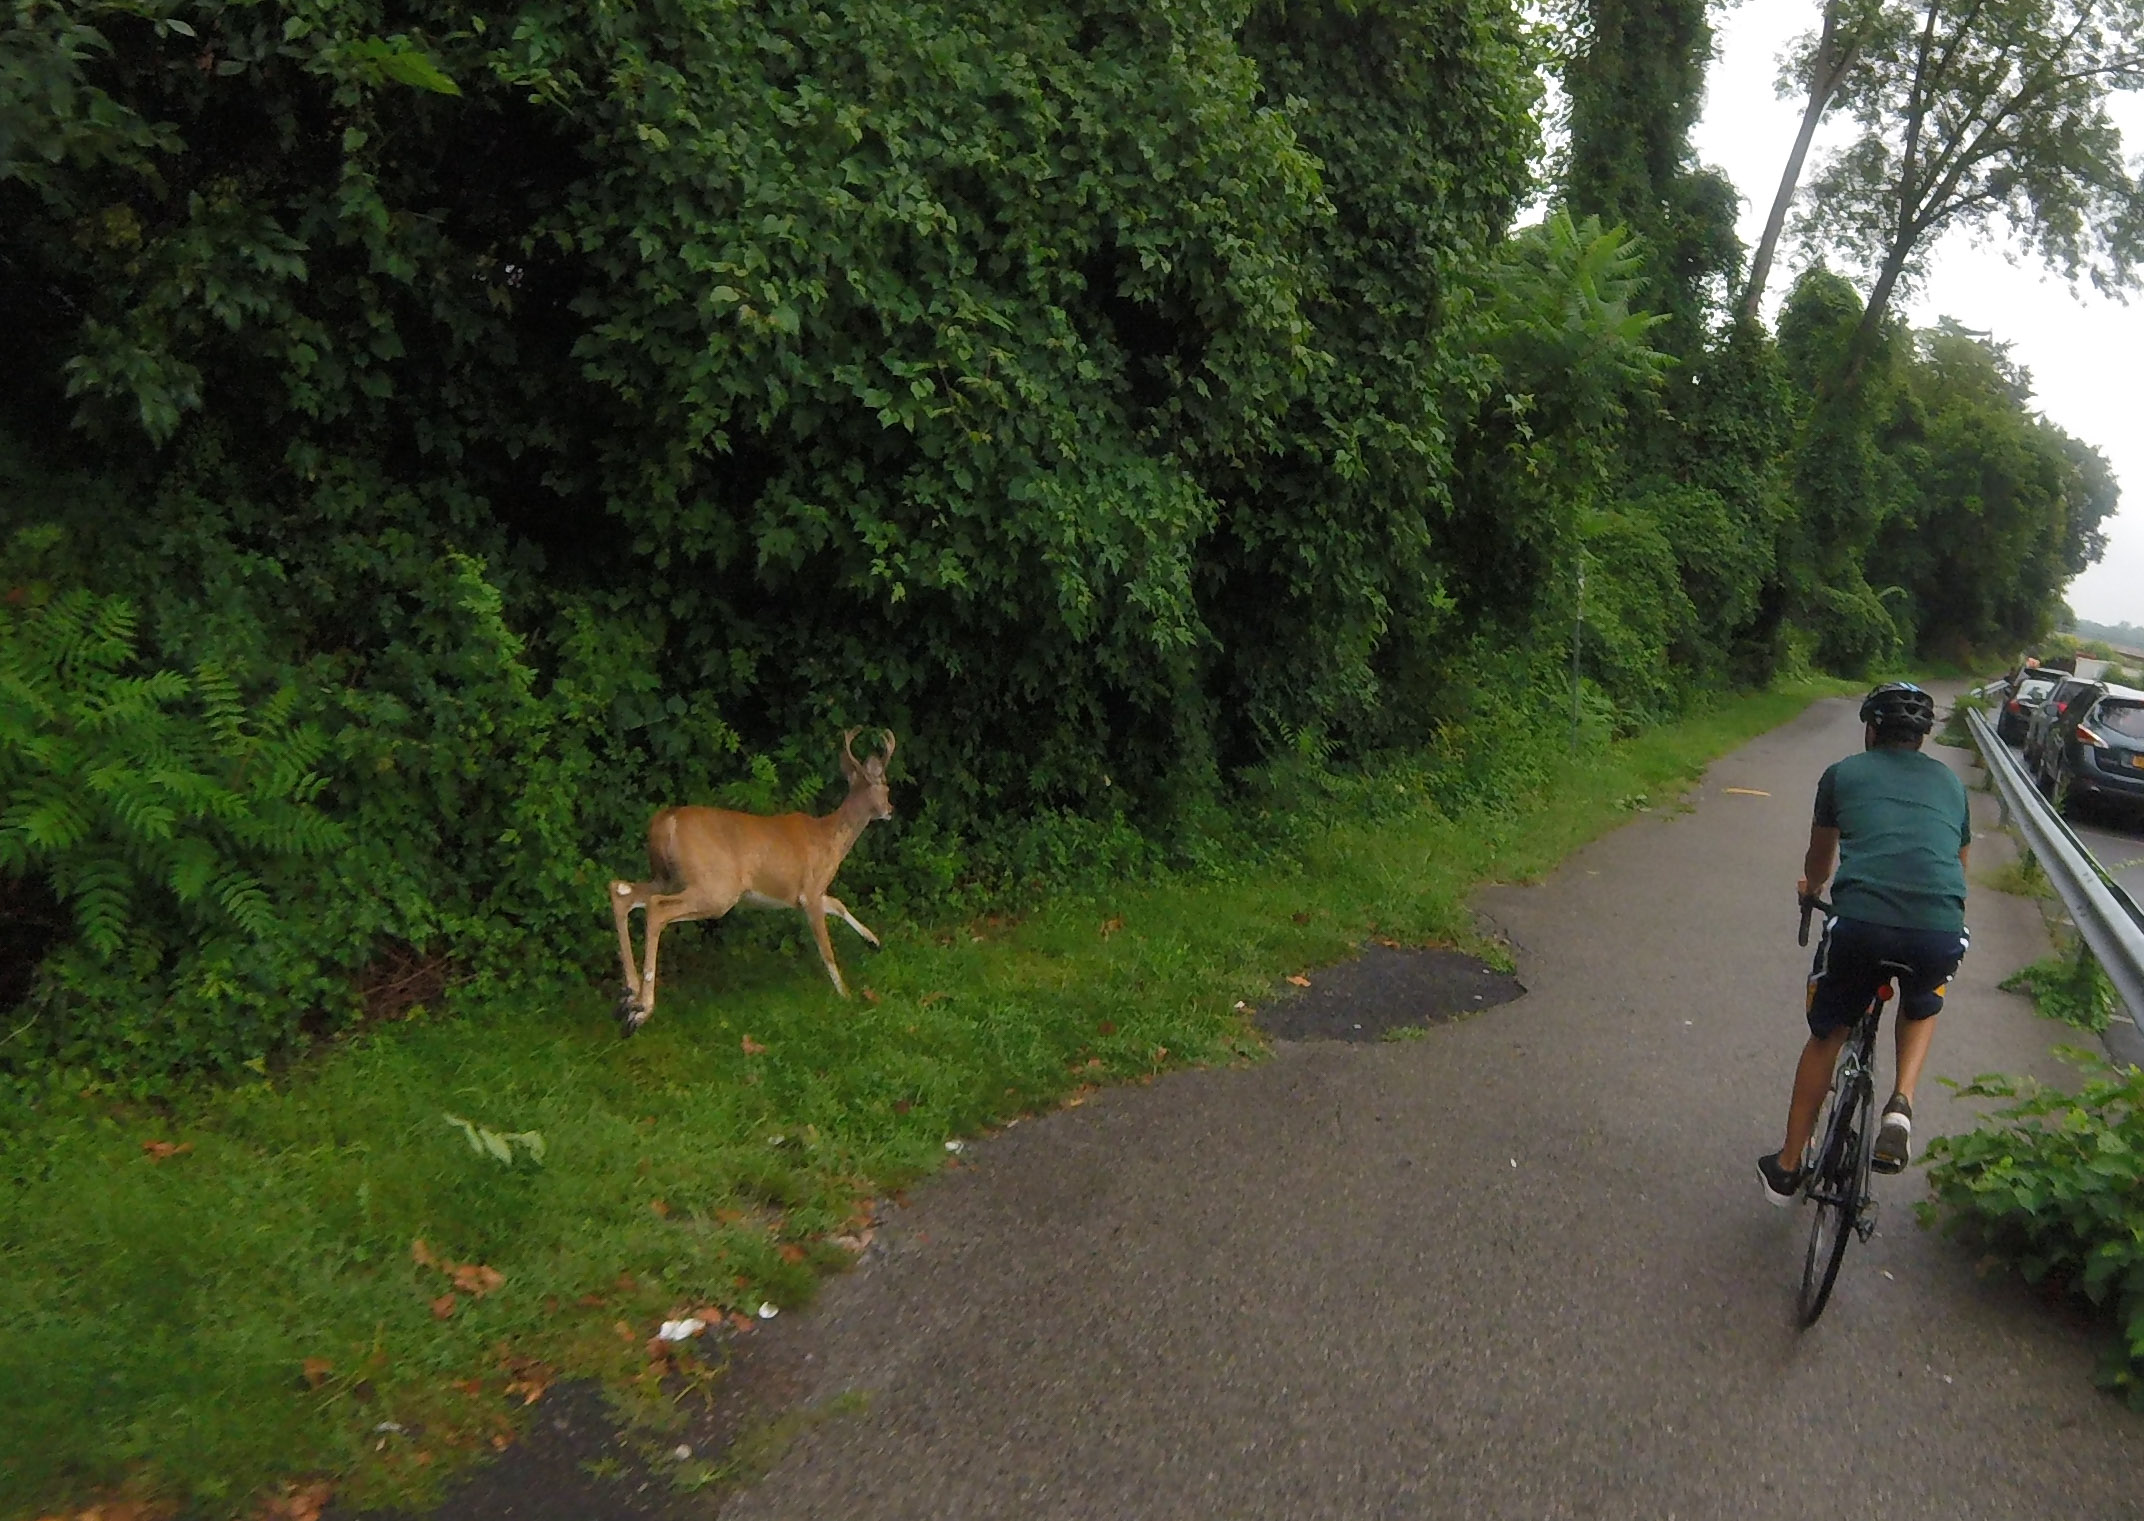 deer_bike_ride.jpg